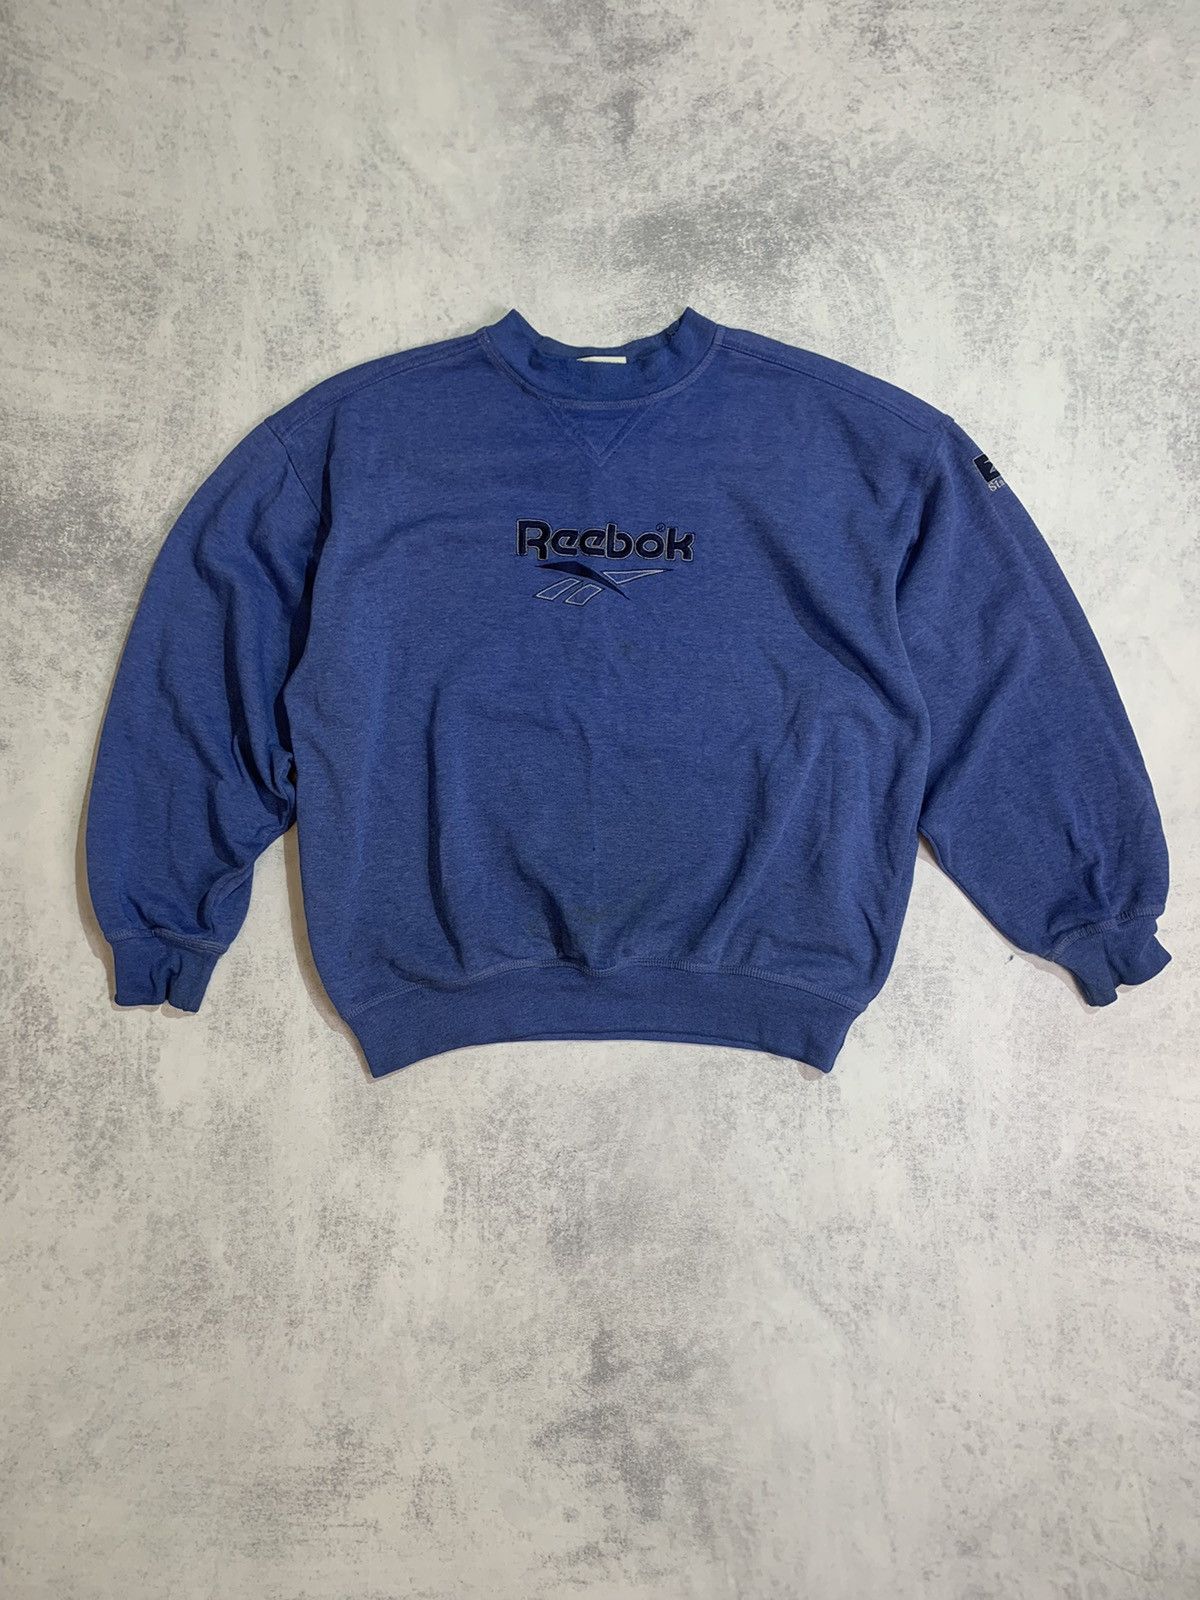 Pre-owned Reebok X Vintage Reebok Vintage Distressed Crewneck Sweatshirt In Blue